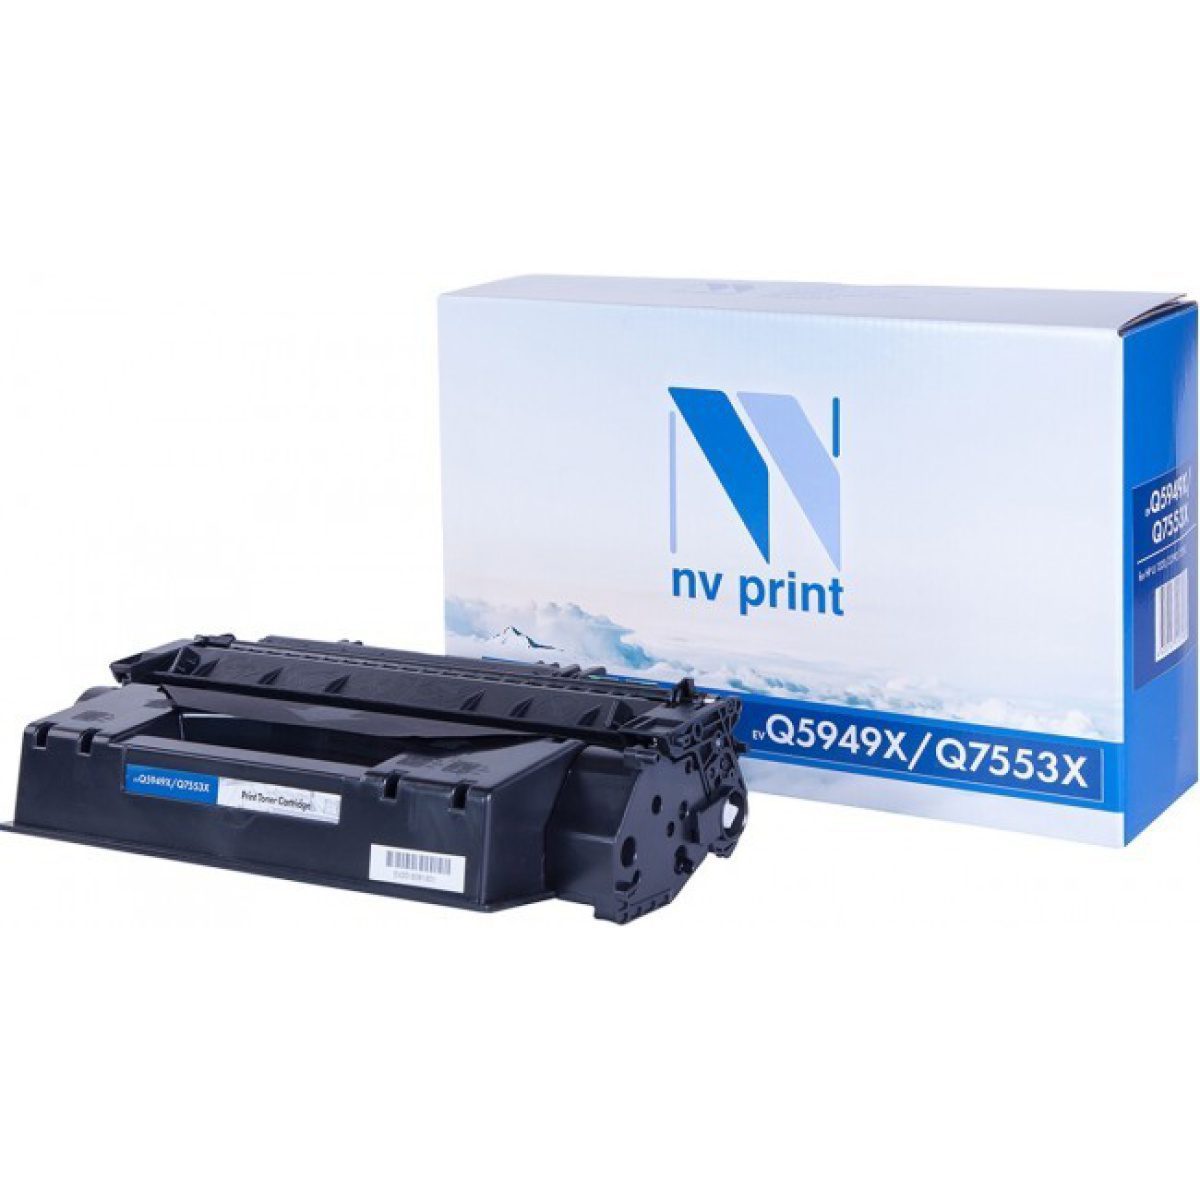 Купить картридж NV Print Q5949X / Q7553X черный по адекватной цене — Digit-Mall